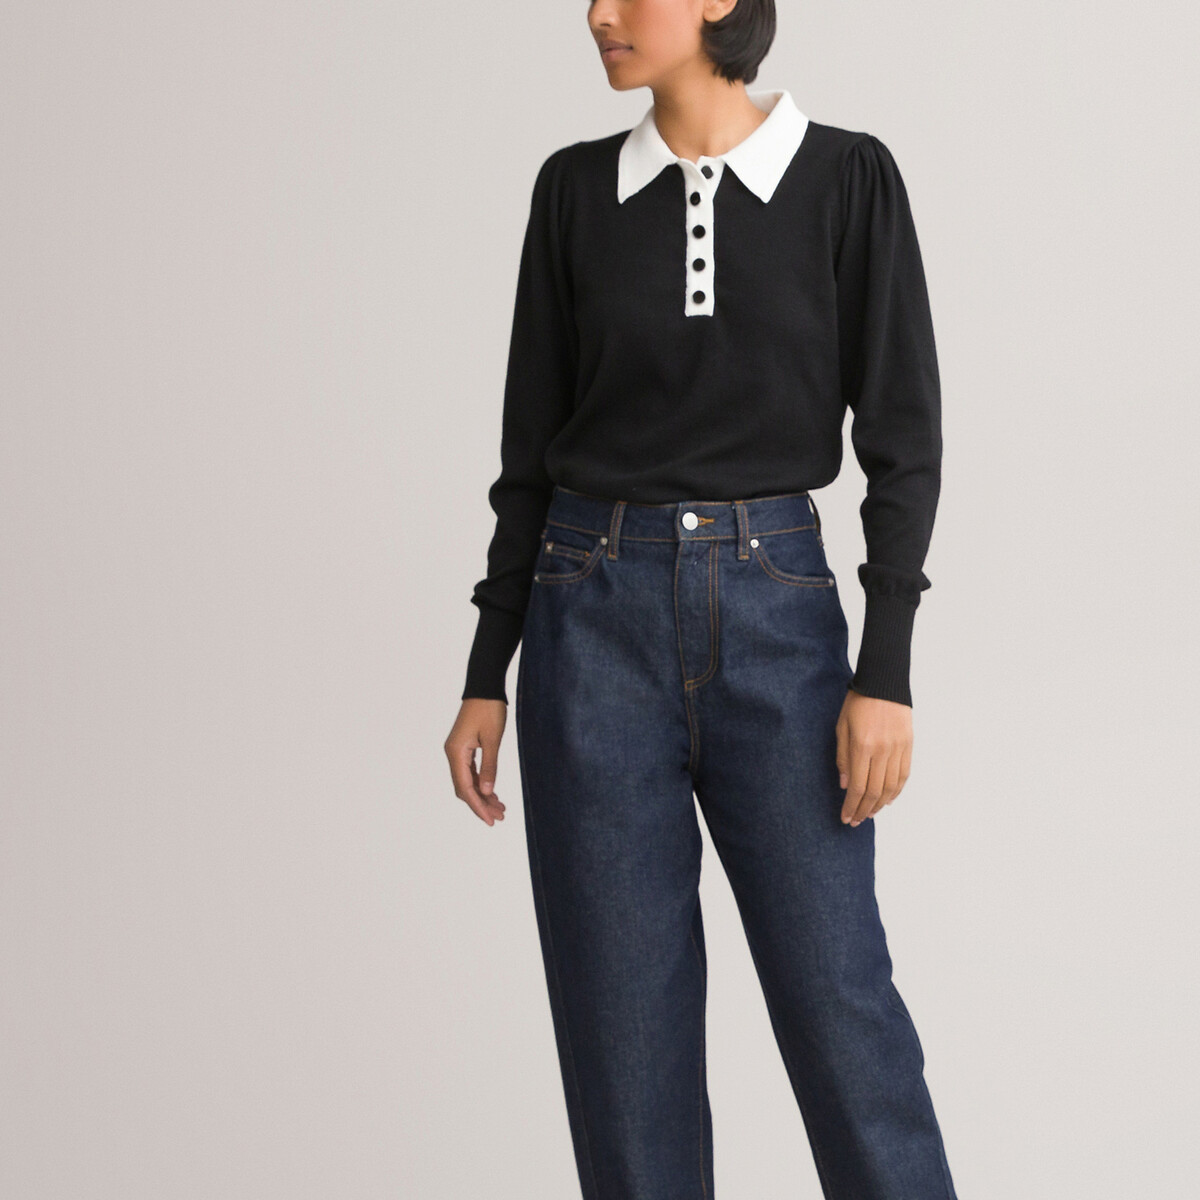 Пуловер LaRedoute С воротником-поло двухцветный декоративные пуговицы M черный, размер M - фото 3